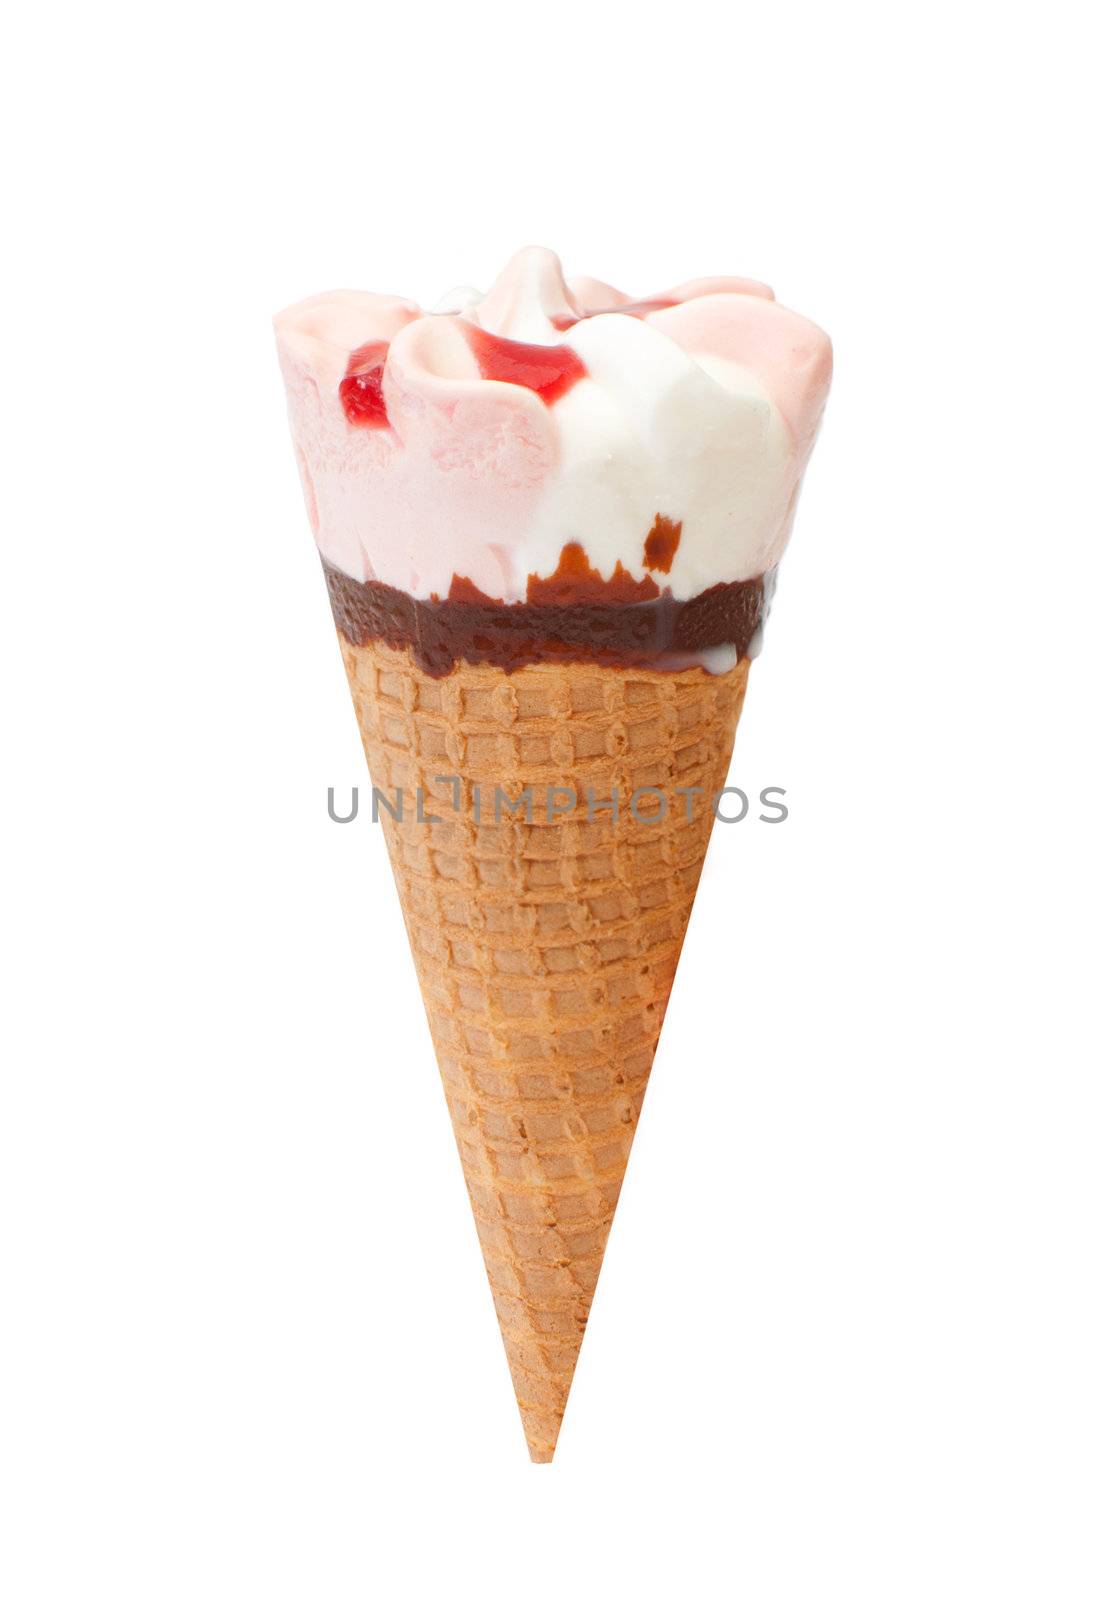 Strawberry, vanilla and chocolate icecream in a cone